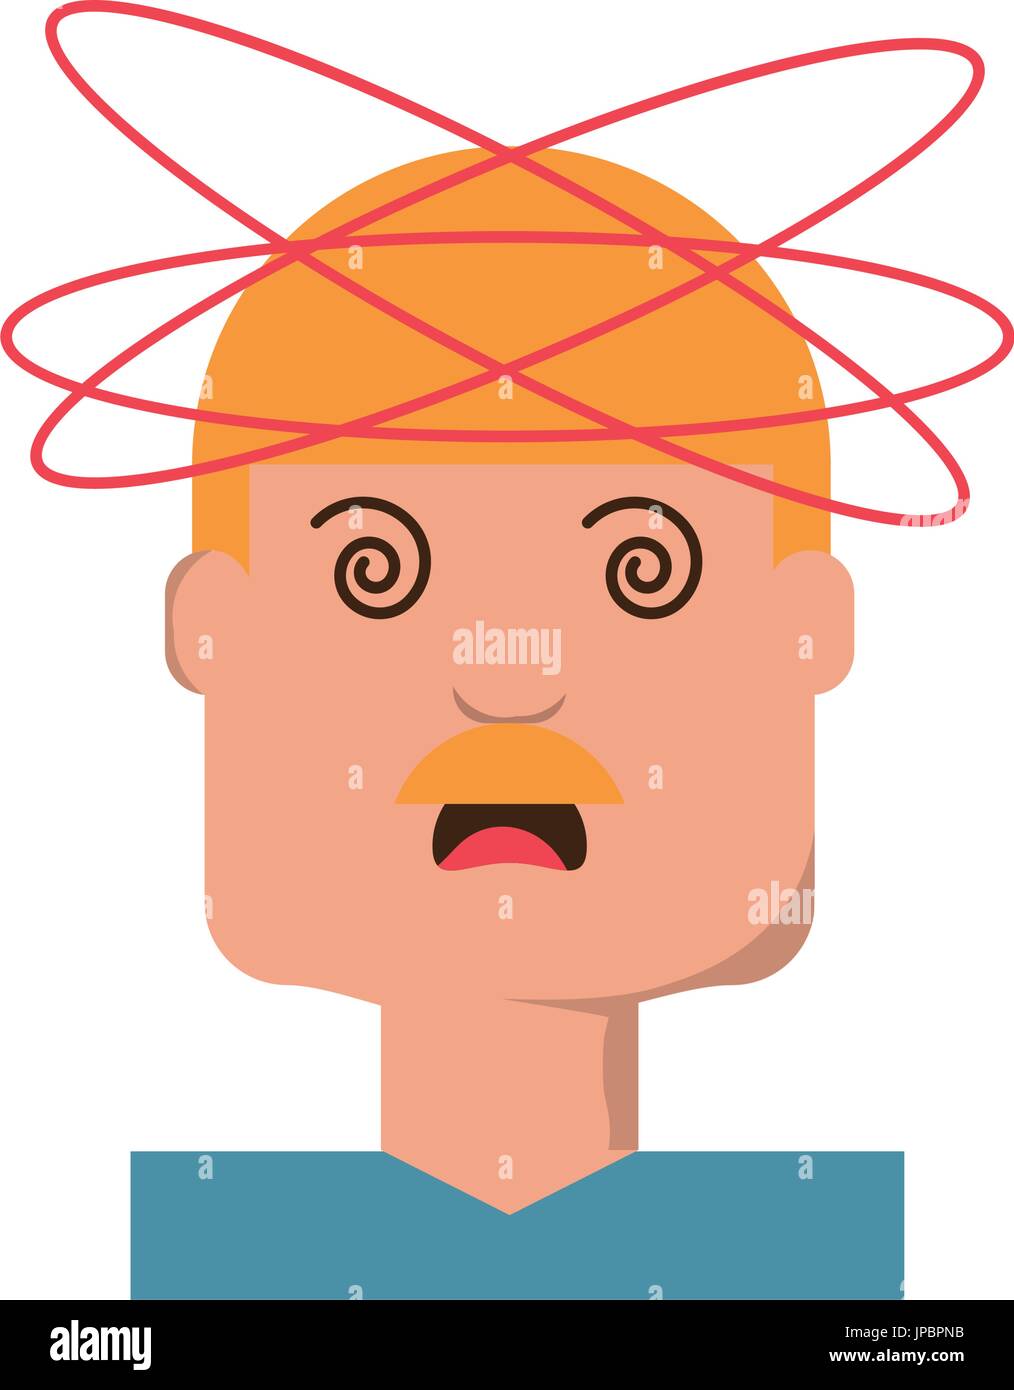 Crazy man cartoon Stock Vector Image & Art - Alamy